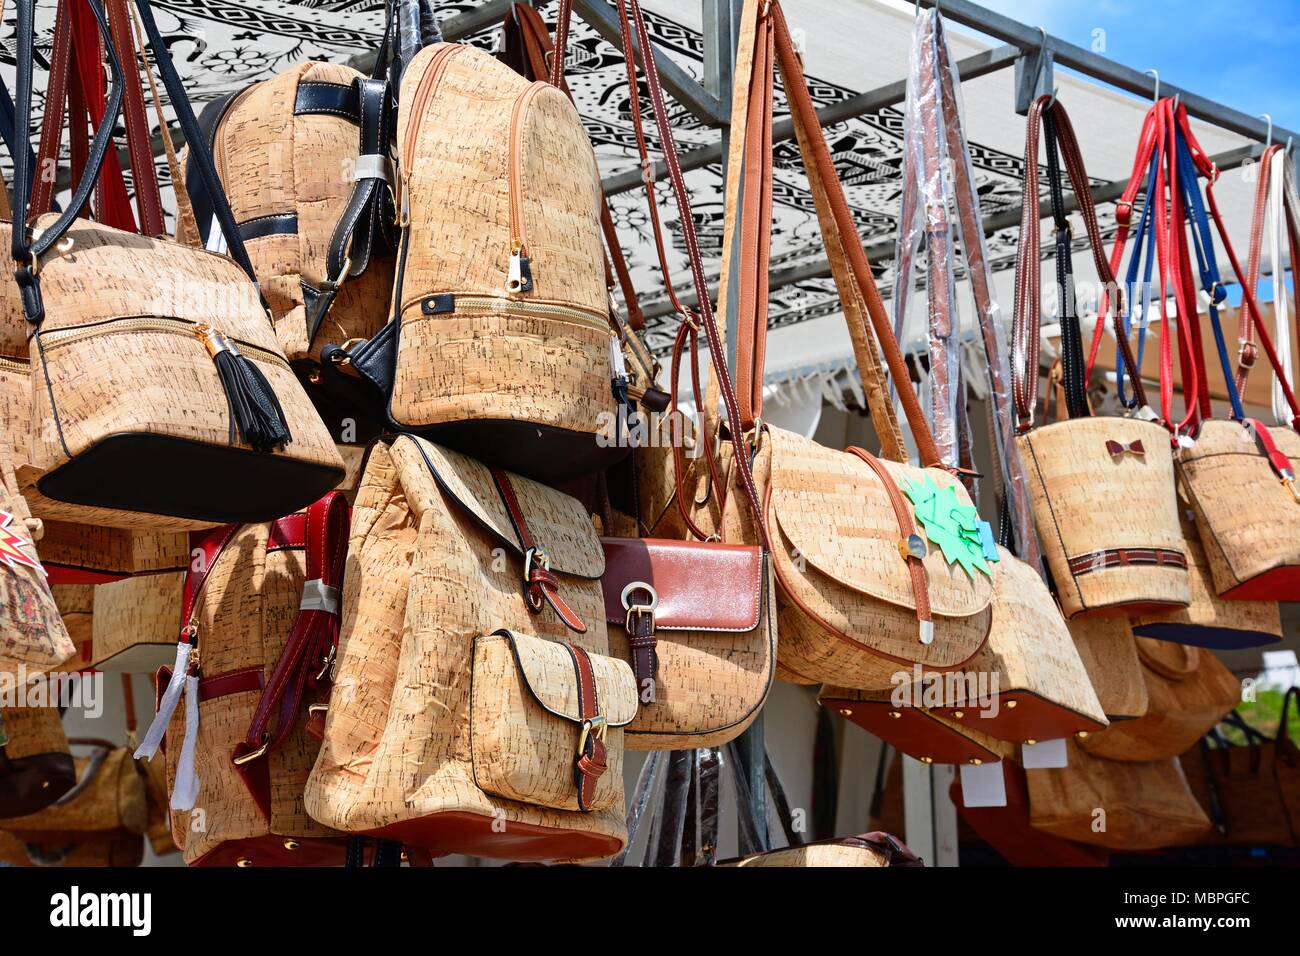 Market stall selling traditional Portuguese cork handbags along the Avenida dos Descobrimentos, Lagos, Algarve, Portugal, Europe. Stock Photo